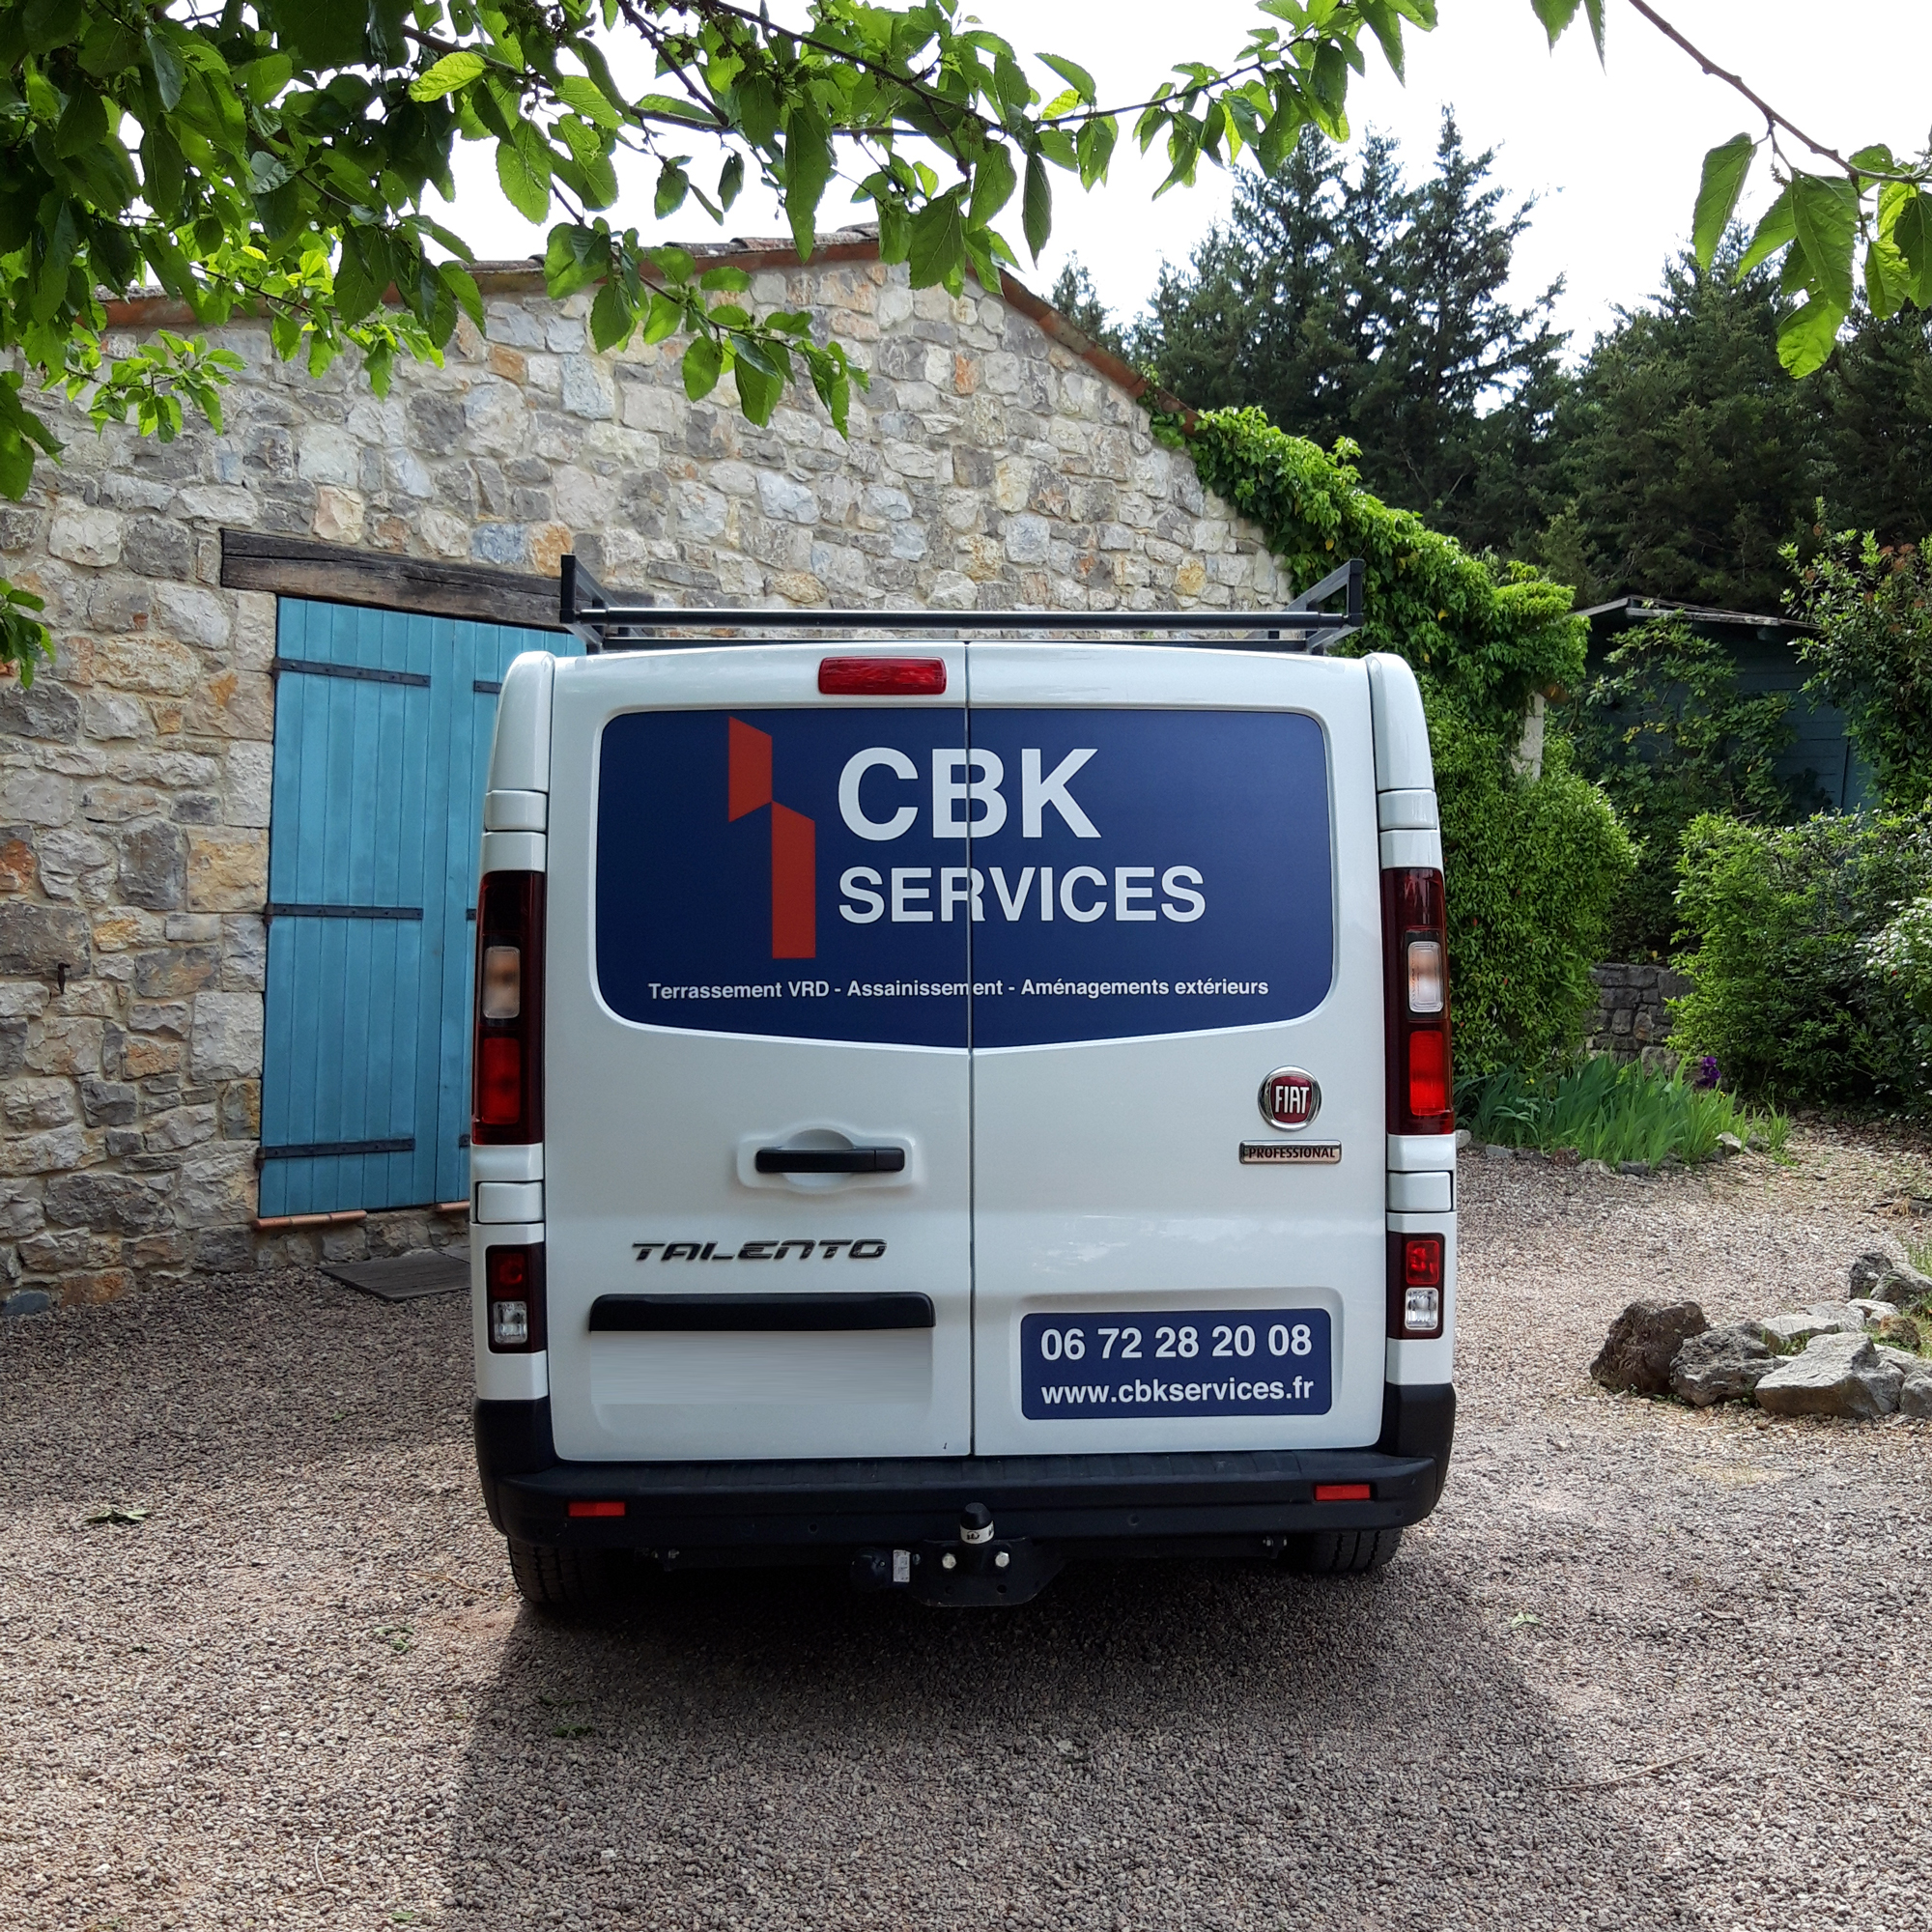 Marquage véhicule pour CBK services